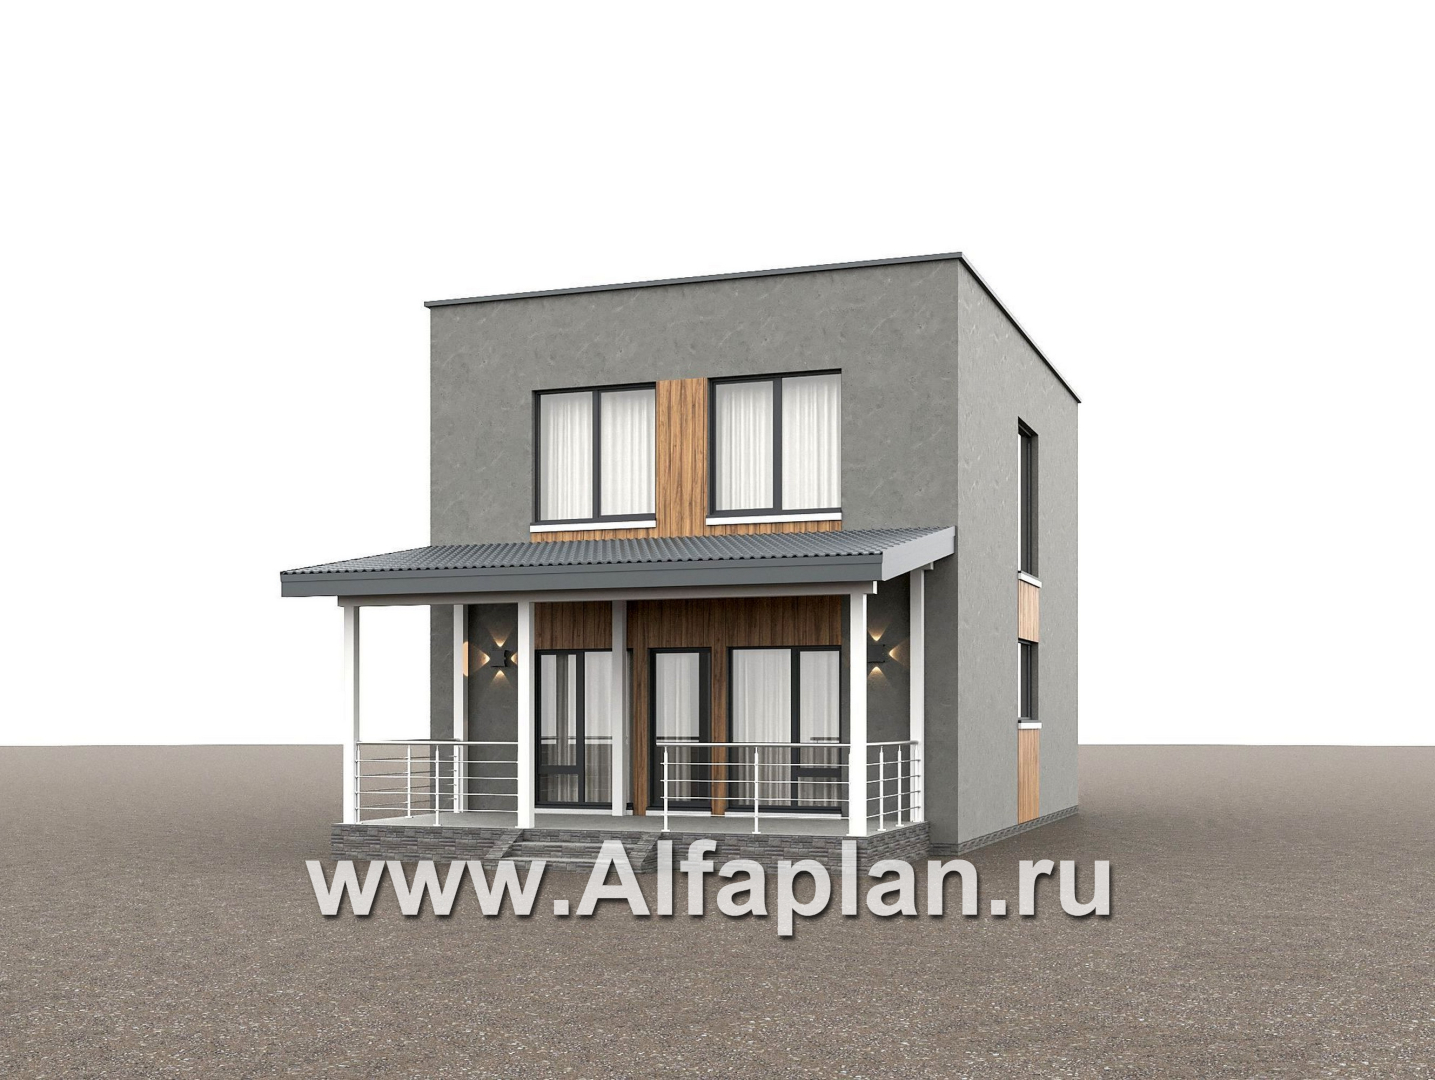 «Викинг» - проект дома, 2 этажа, с сауной и с террасой, в стиле хай-тек - дизайн дома №2